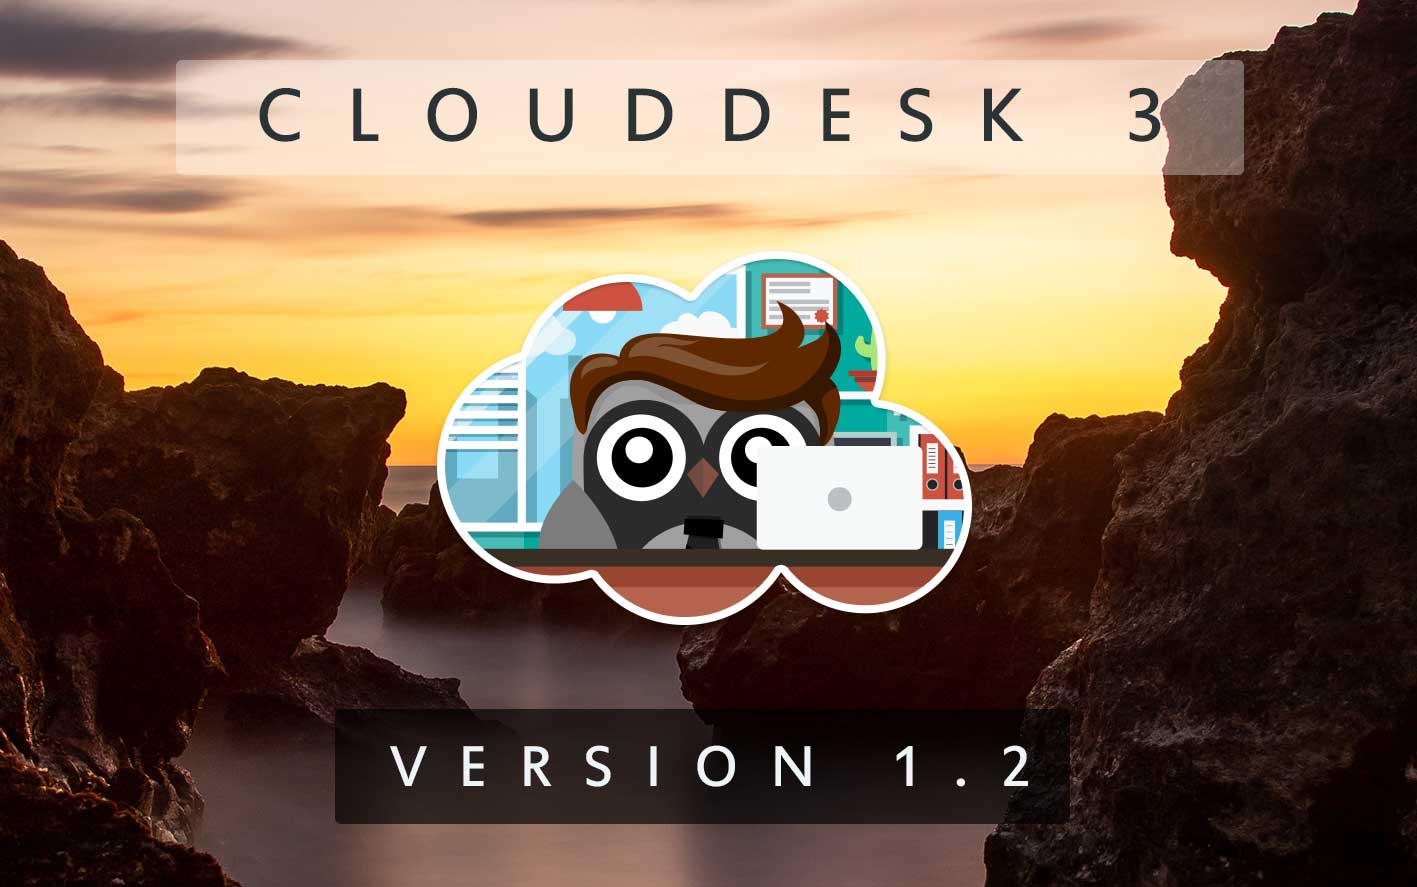 Cloud Desk 3 - Version 1.2